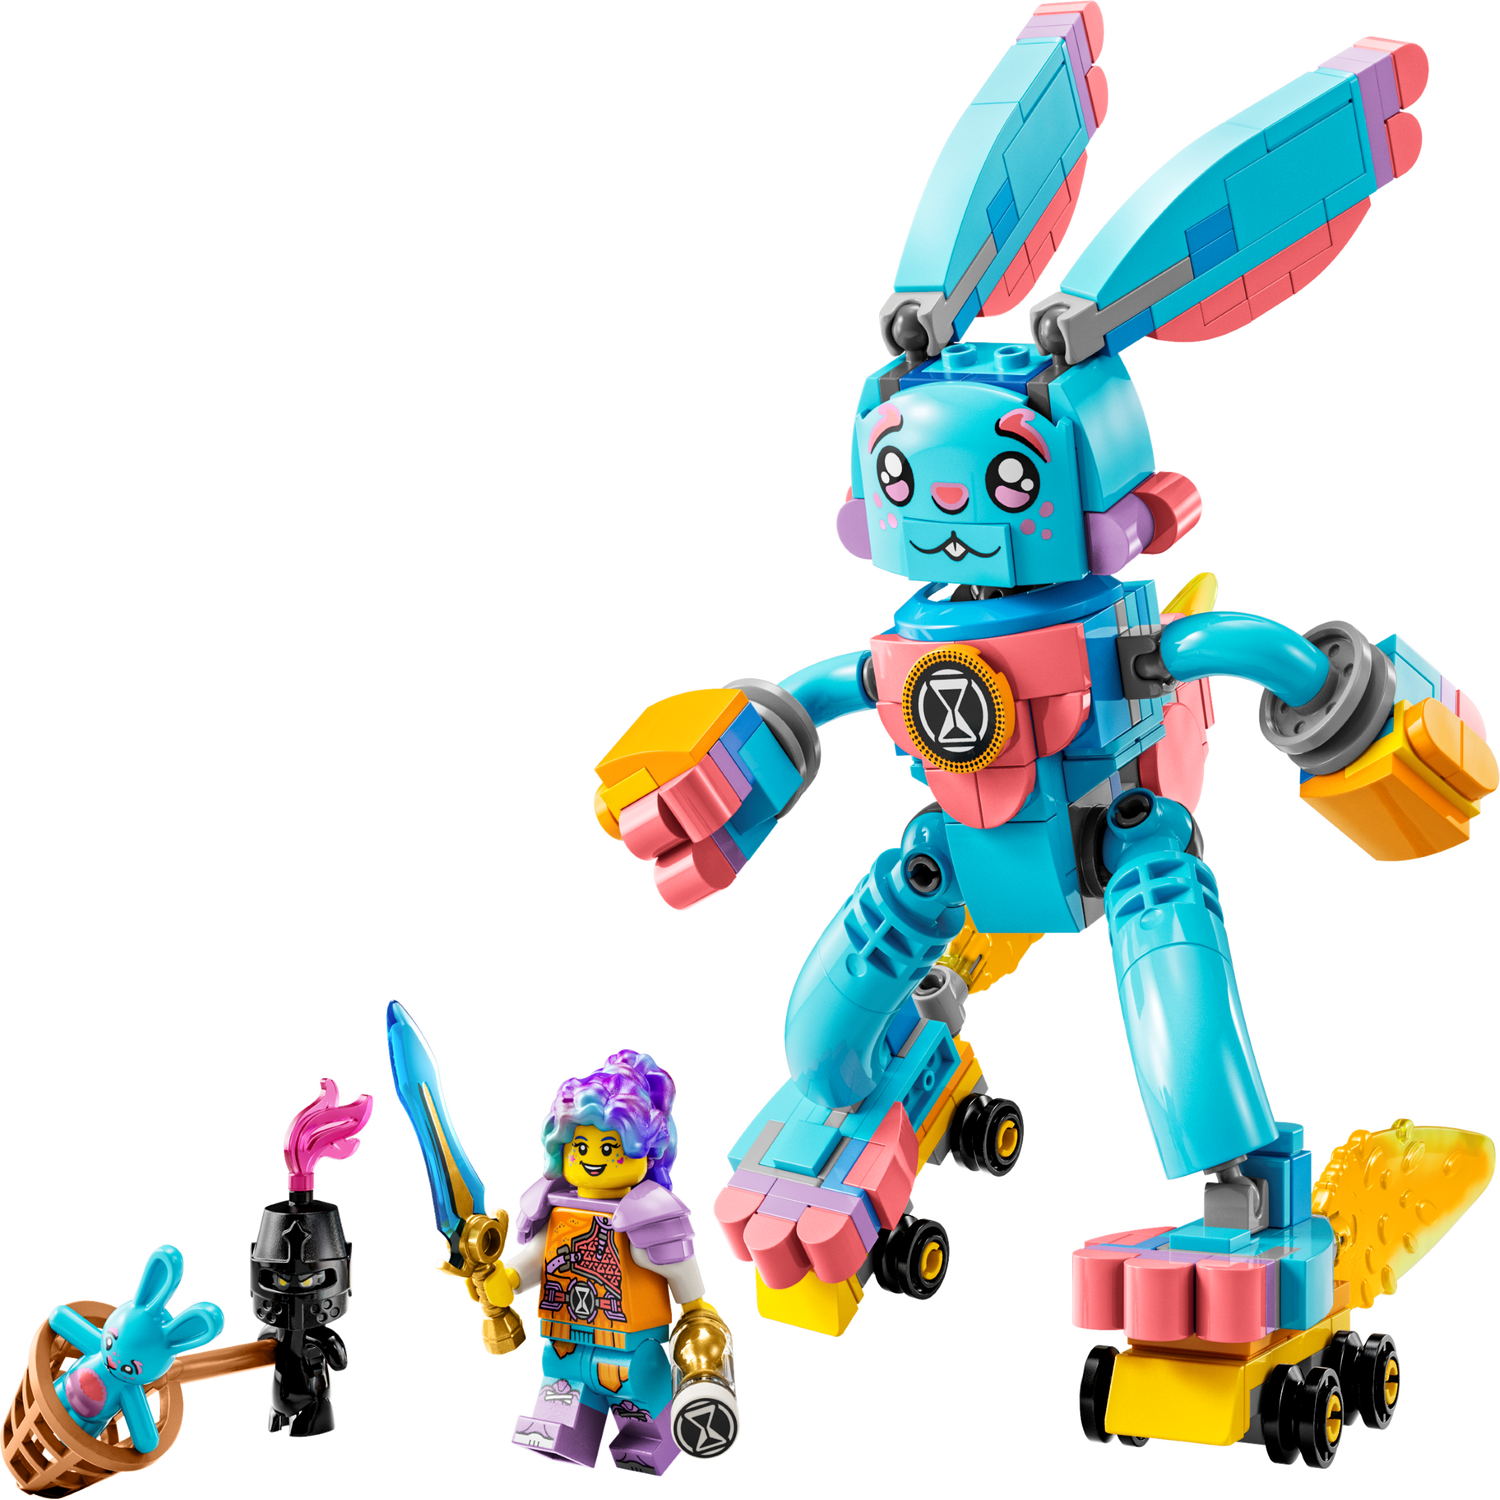 Izzie and Bunchu the Bunny 71453, LEGO® DREAMZzz™